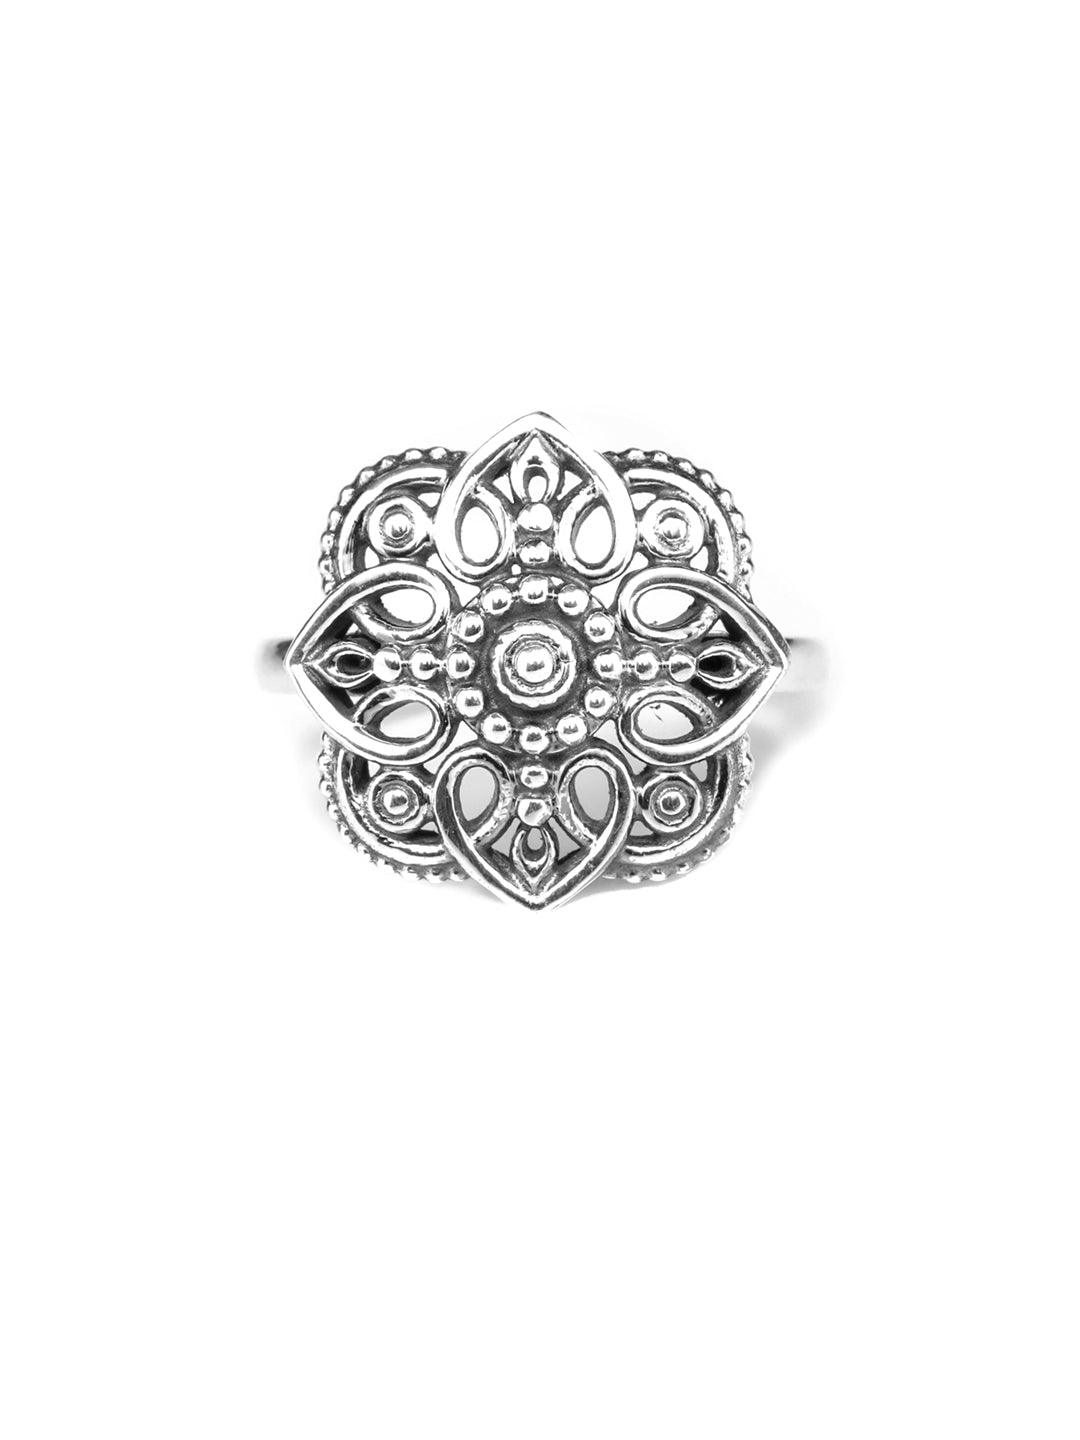 Women's Oxidised Silver Blooming Flower Ring - Priyaasi - Indiakreations